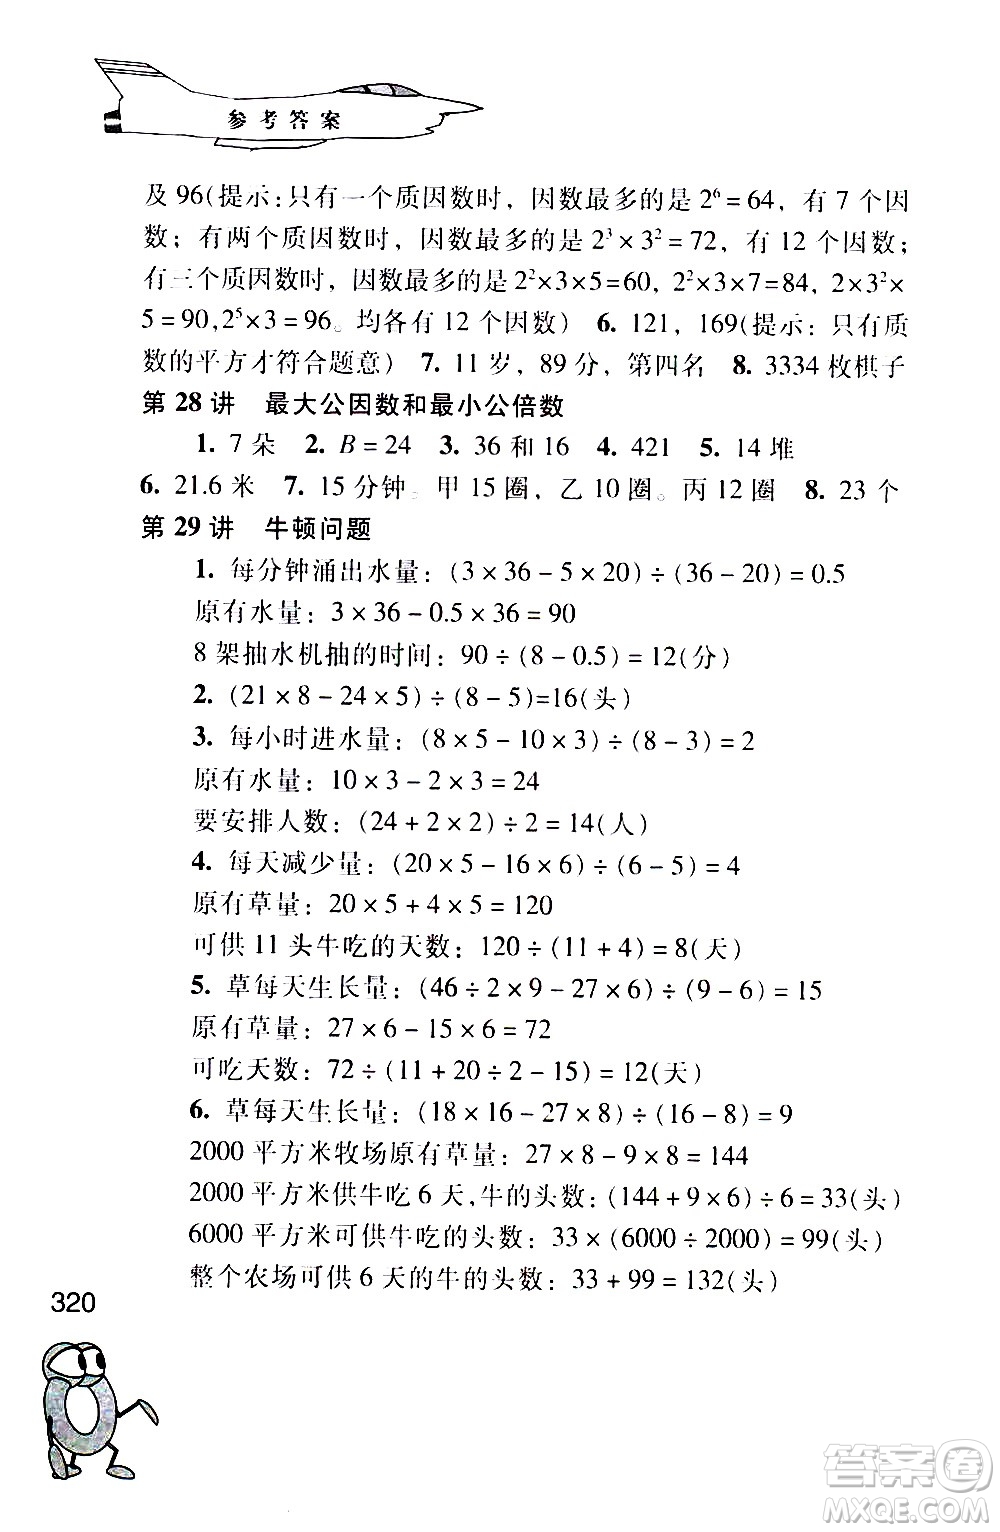 江苏凤凰少年儿童出版社2021小学数学奥赛起跑线五年级分册答案